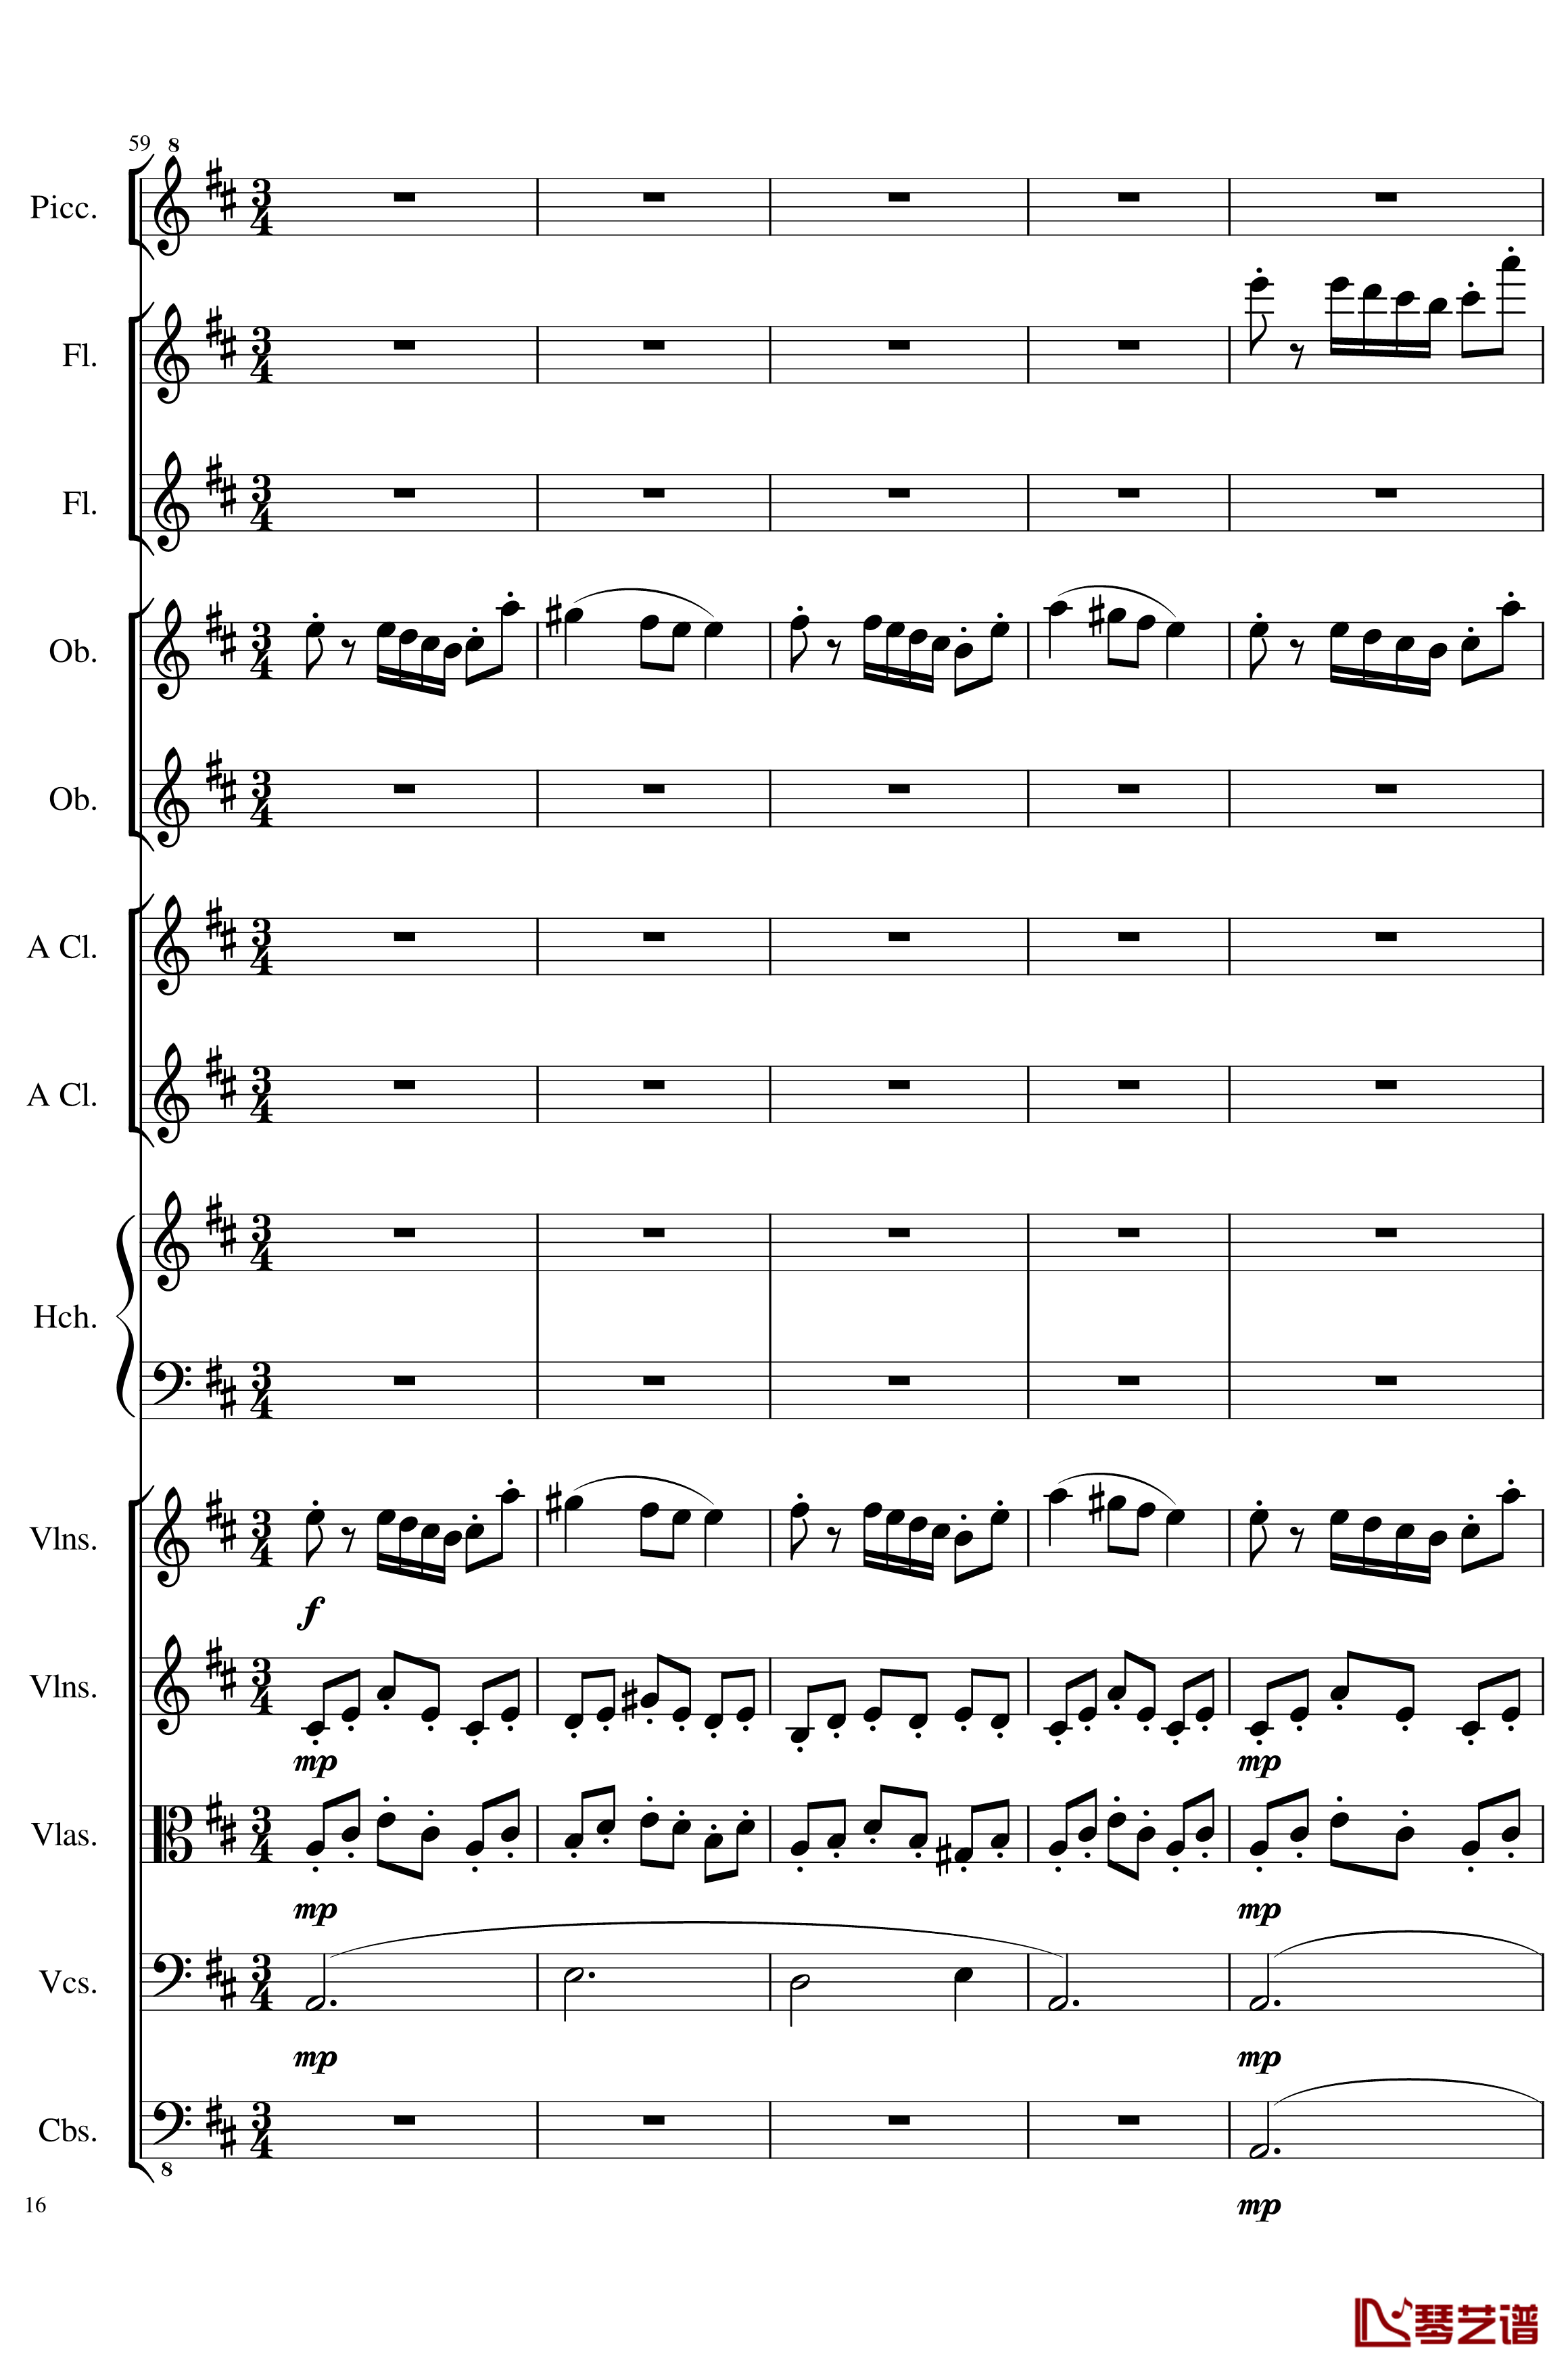 7 Contredanses No.1-7, Op.124钢琴谱-7首乡村舞曲，第一至第七，作品124-一个球16